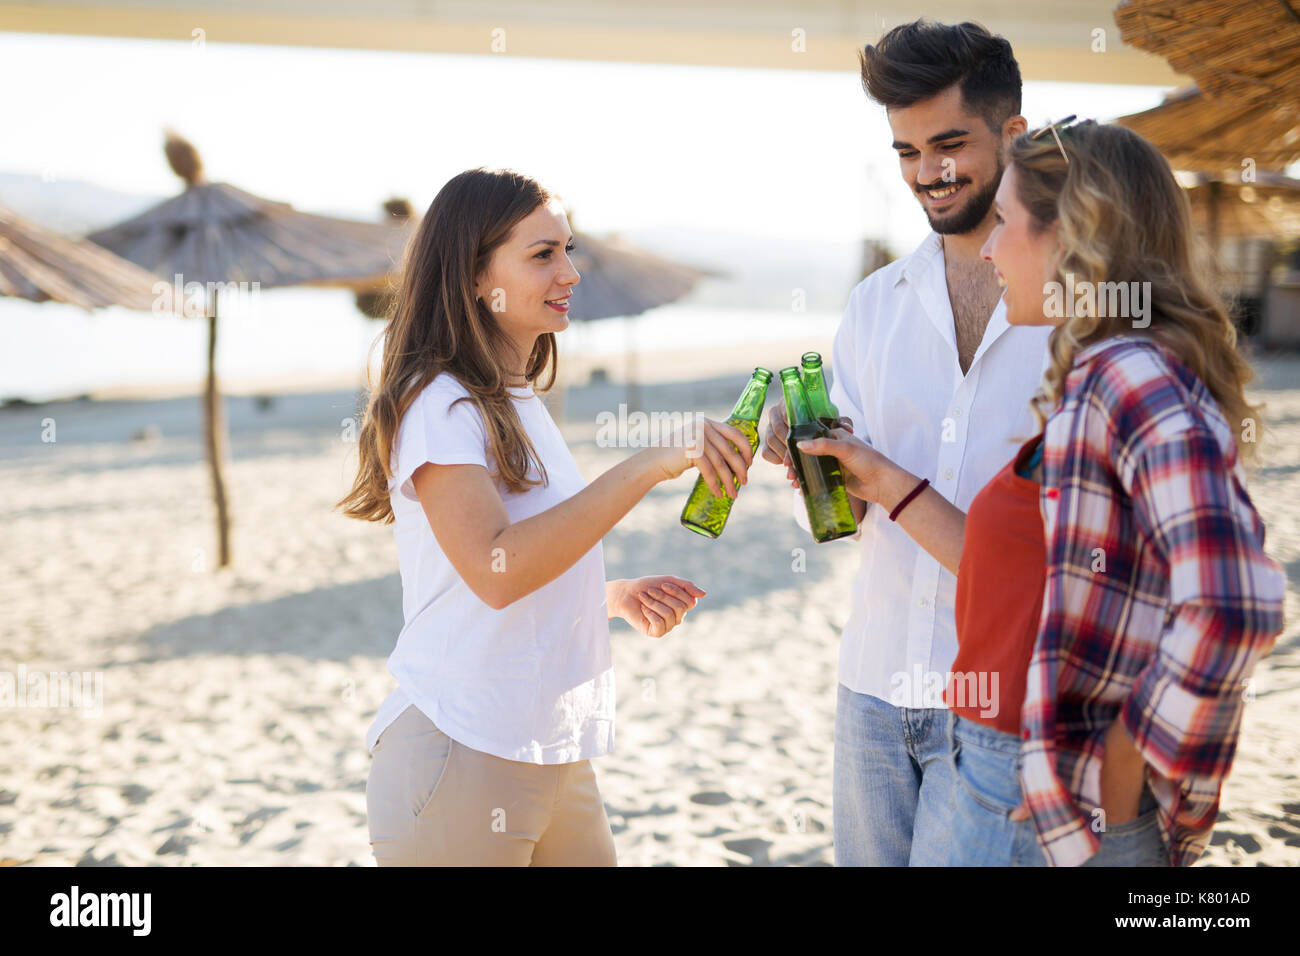 Les gens heureux de boire et s'amuser à la plage Banque D'Images